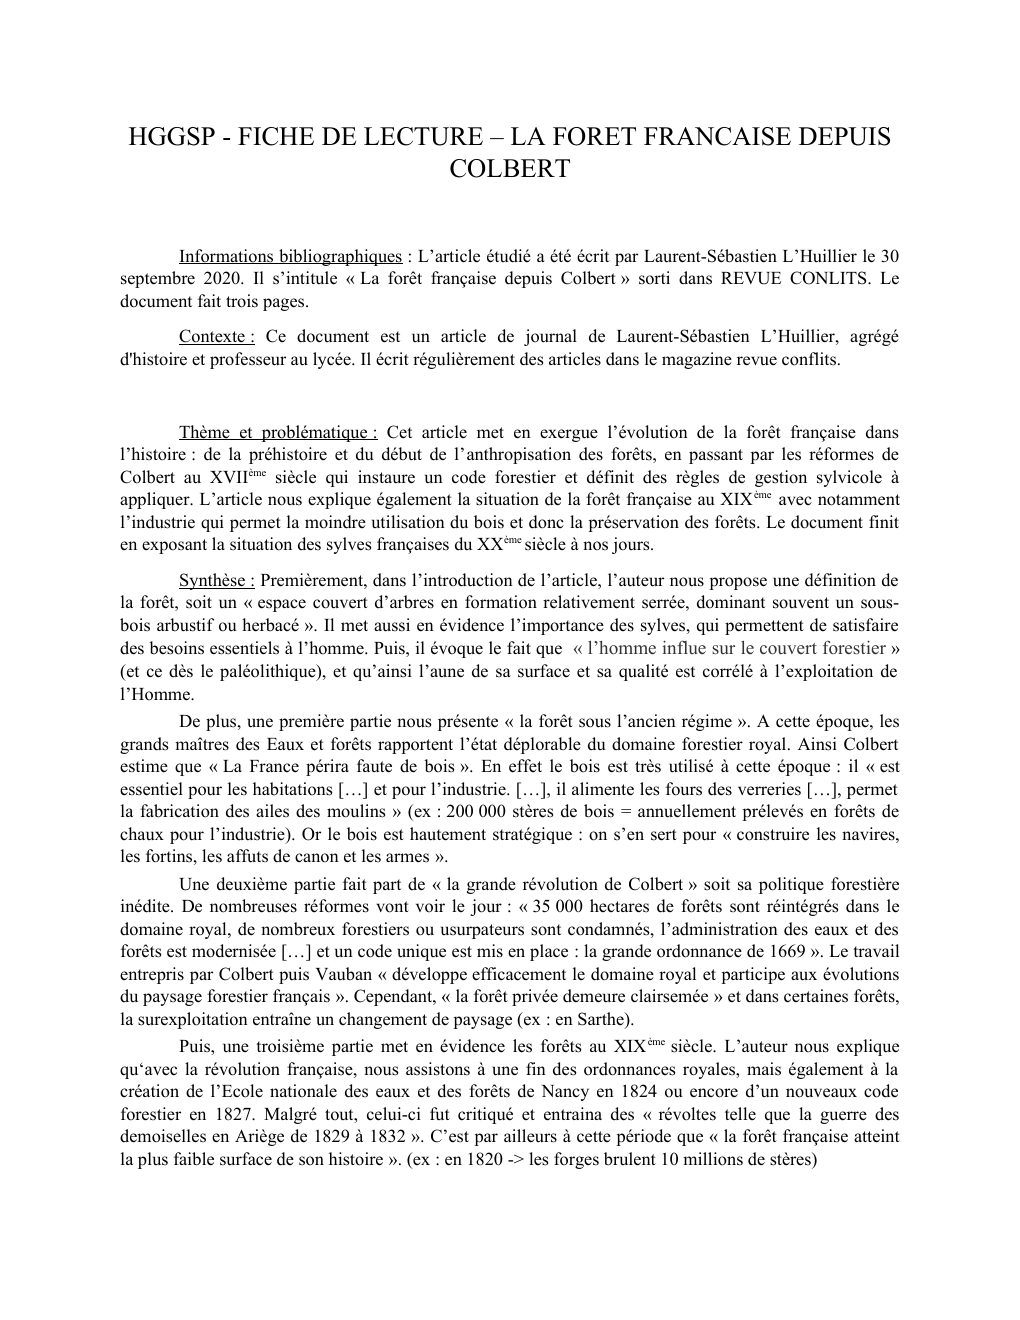 Prévisualisation du document Fiche de lecture sur l'article « La forêt française depuis Colbert » de Laurent-Sébastien L’Huillier